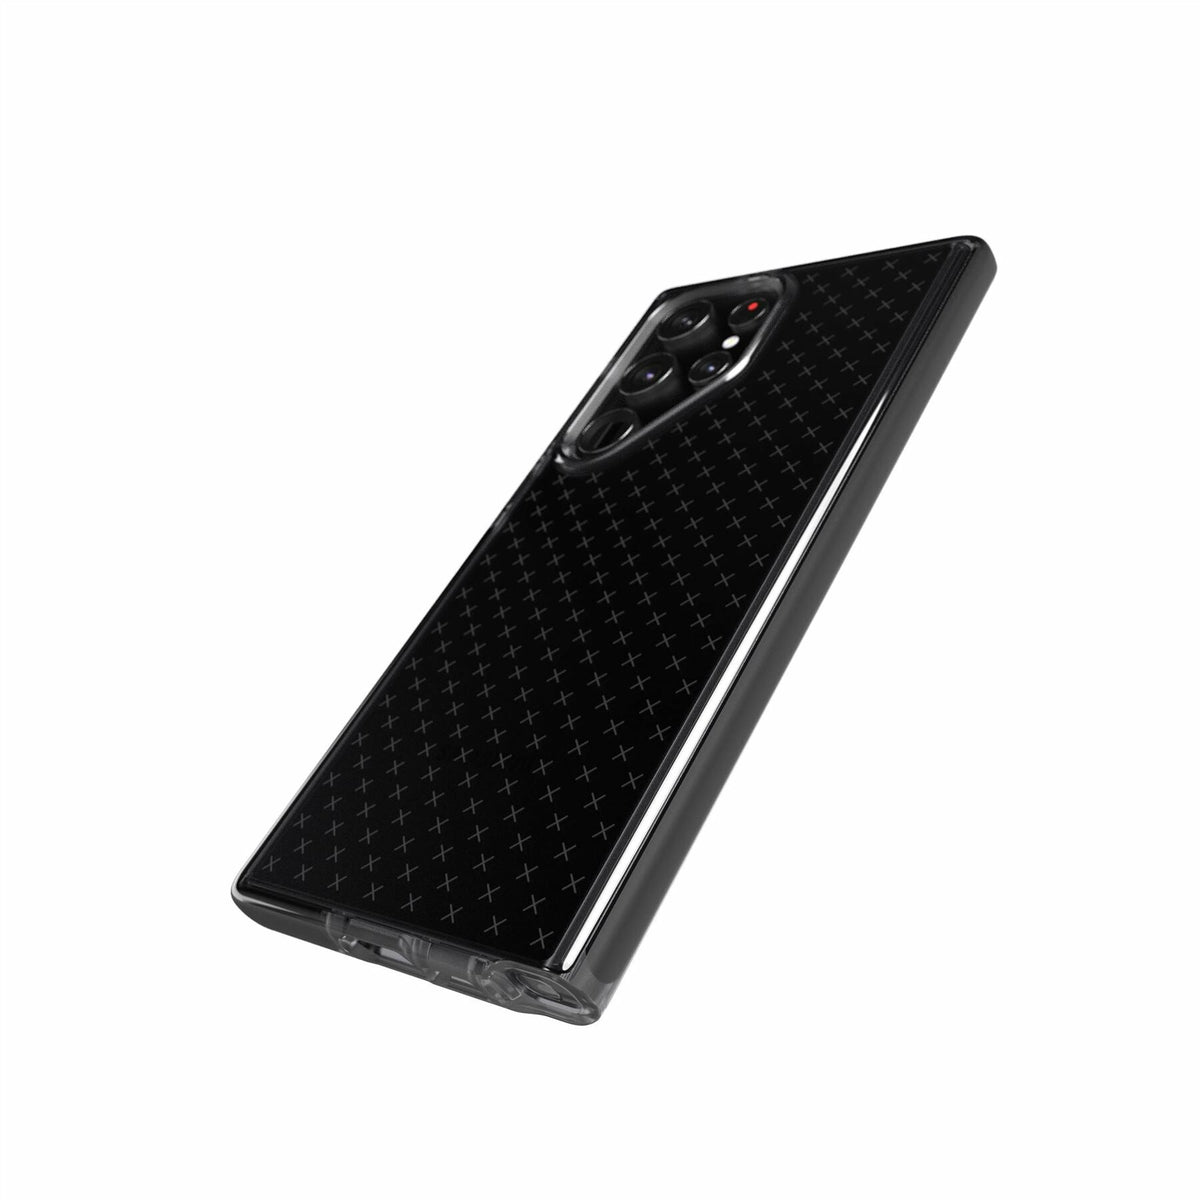 Tech21 Evo Check for Galaxy S23 Ultra in Black